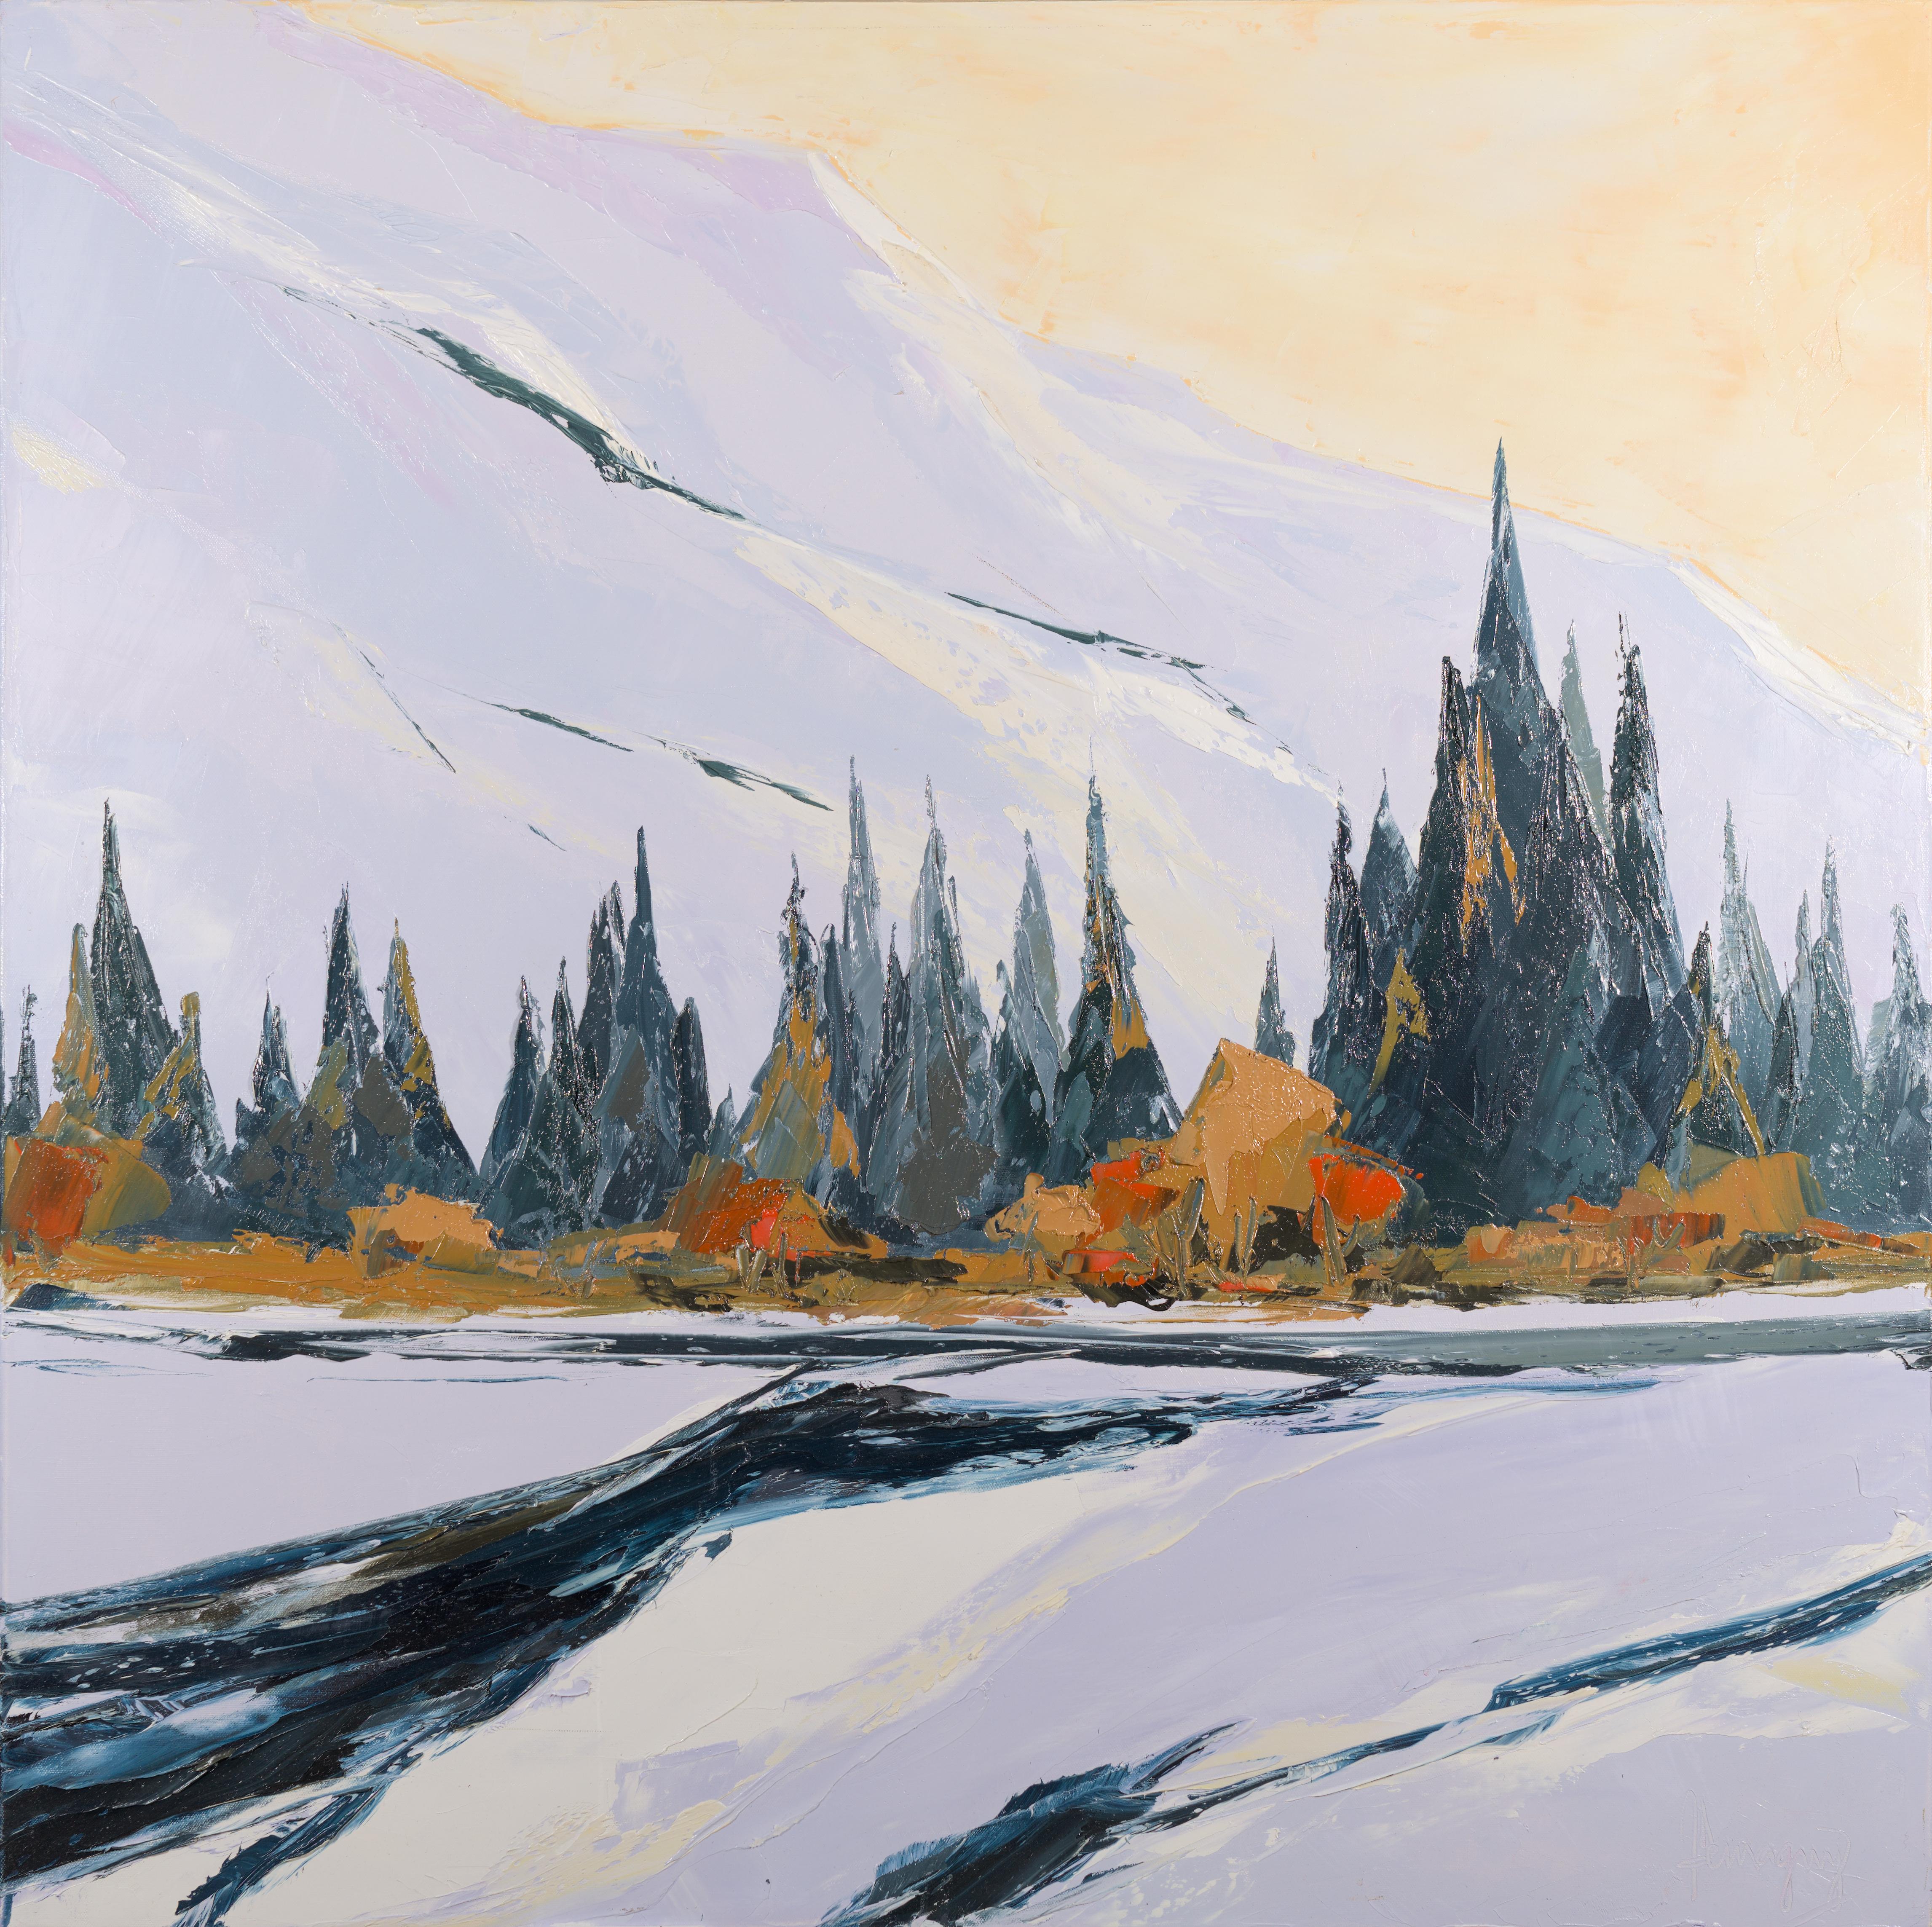 Still-Life Painting Marcel Demagny - "December", Peinture à l'huile de paysage d'hiver, rivière des Peaks surmontée de neige